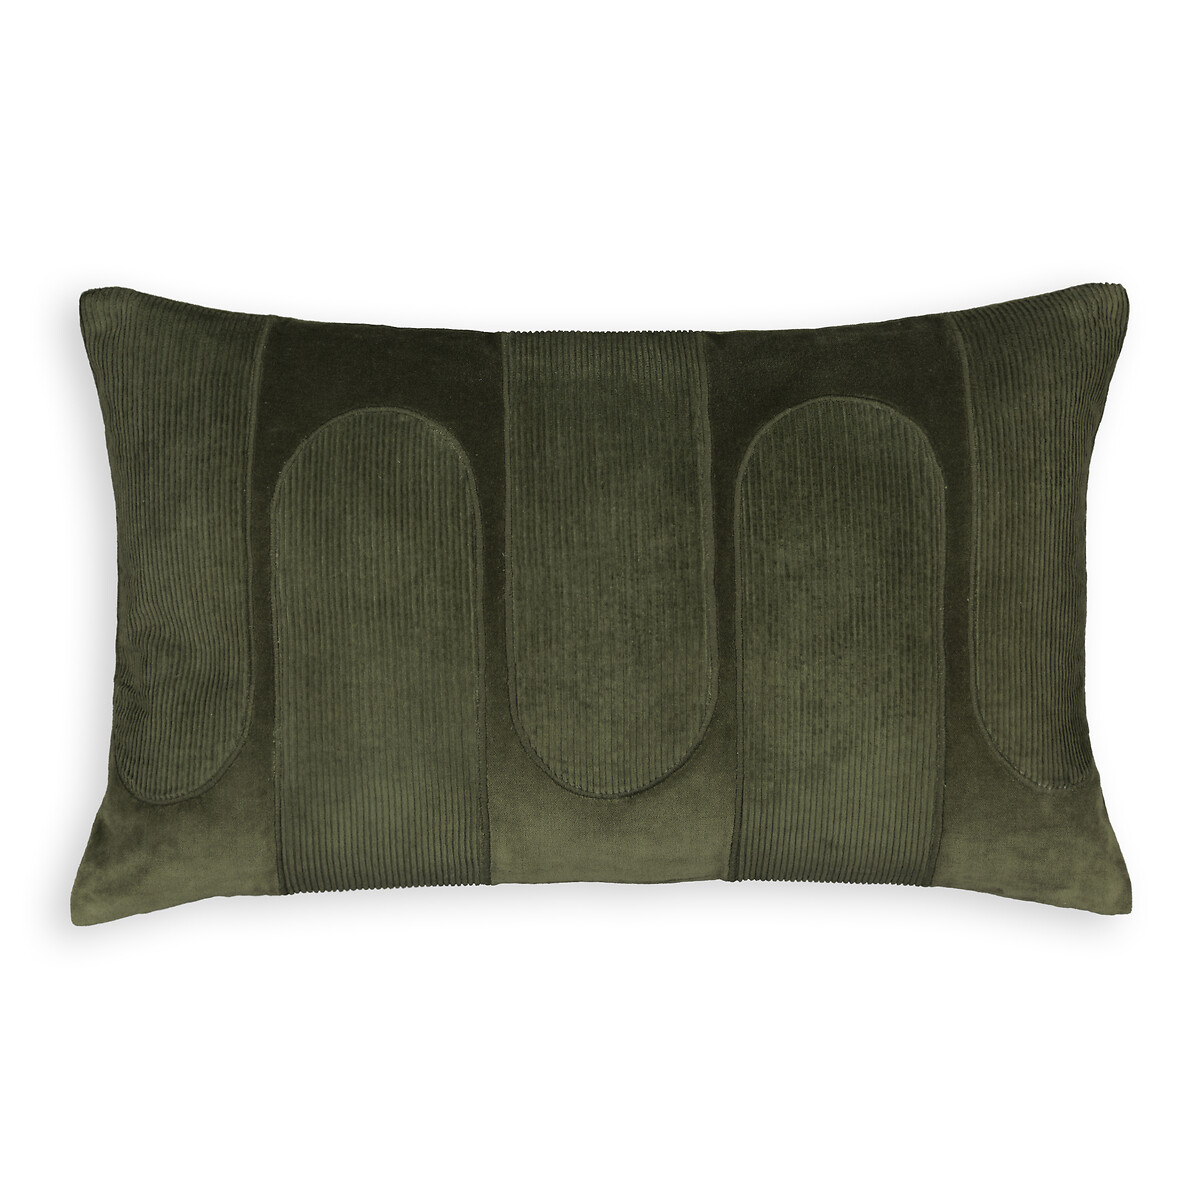 Чехол На подушку из велюра прямоугольный Brimo 50 x 30 см зеленый